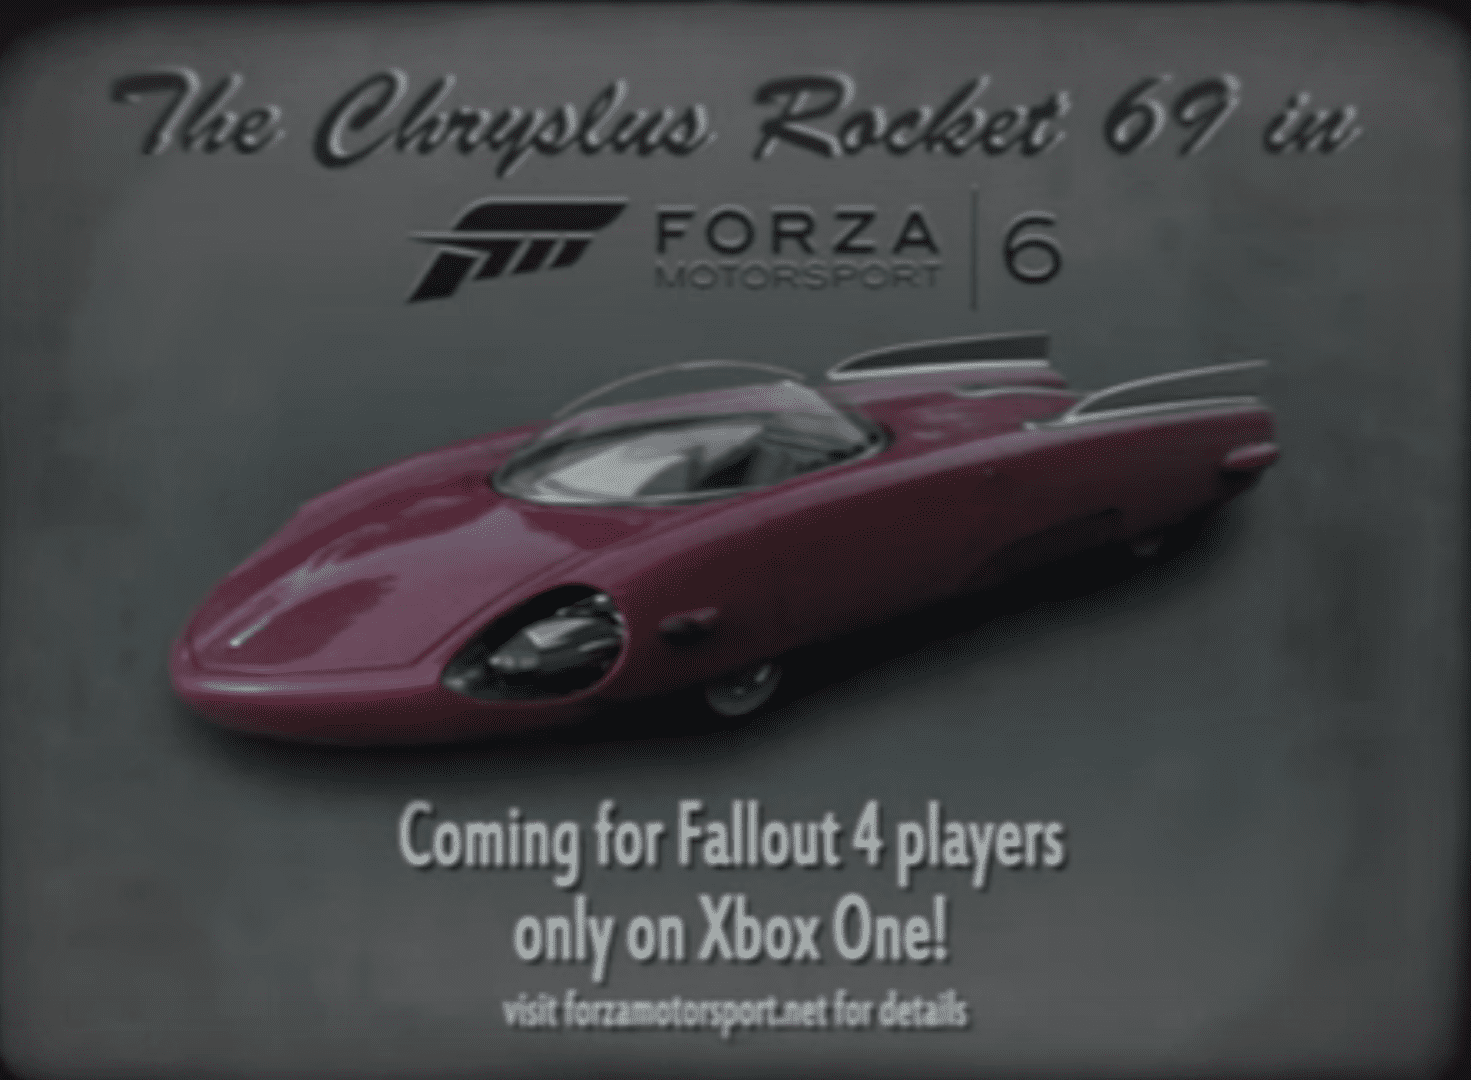 El Chryslus Rocket 69 de Fallout 4 llega a Forza Motorsport 6